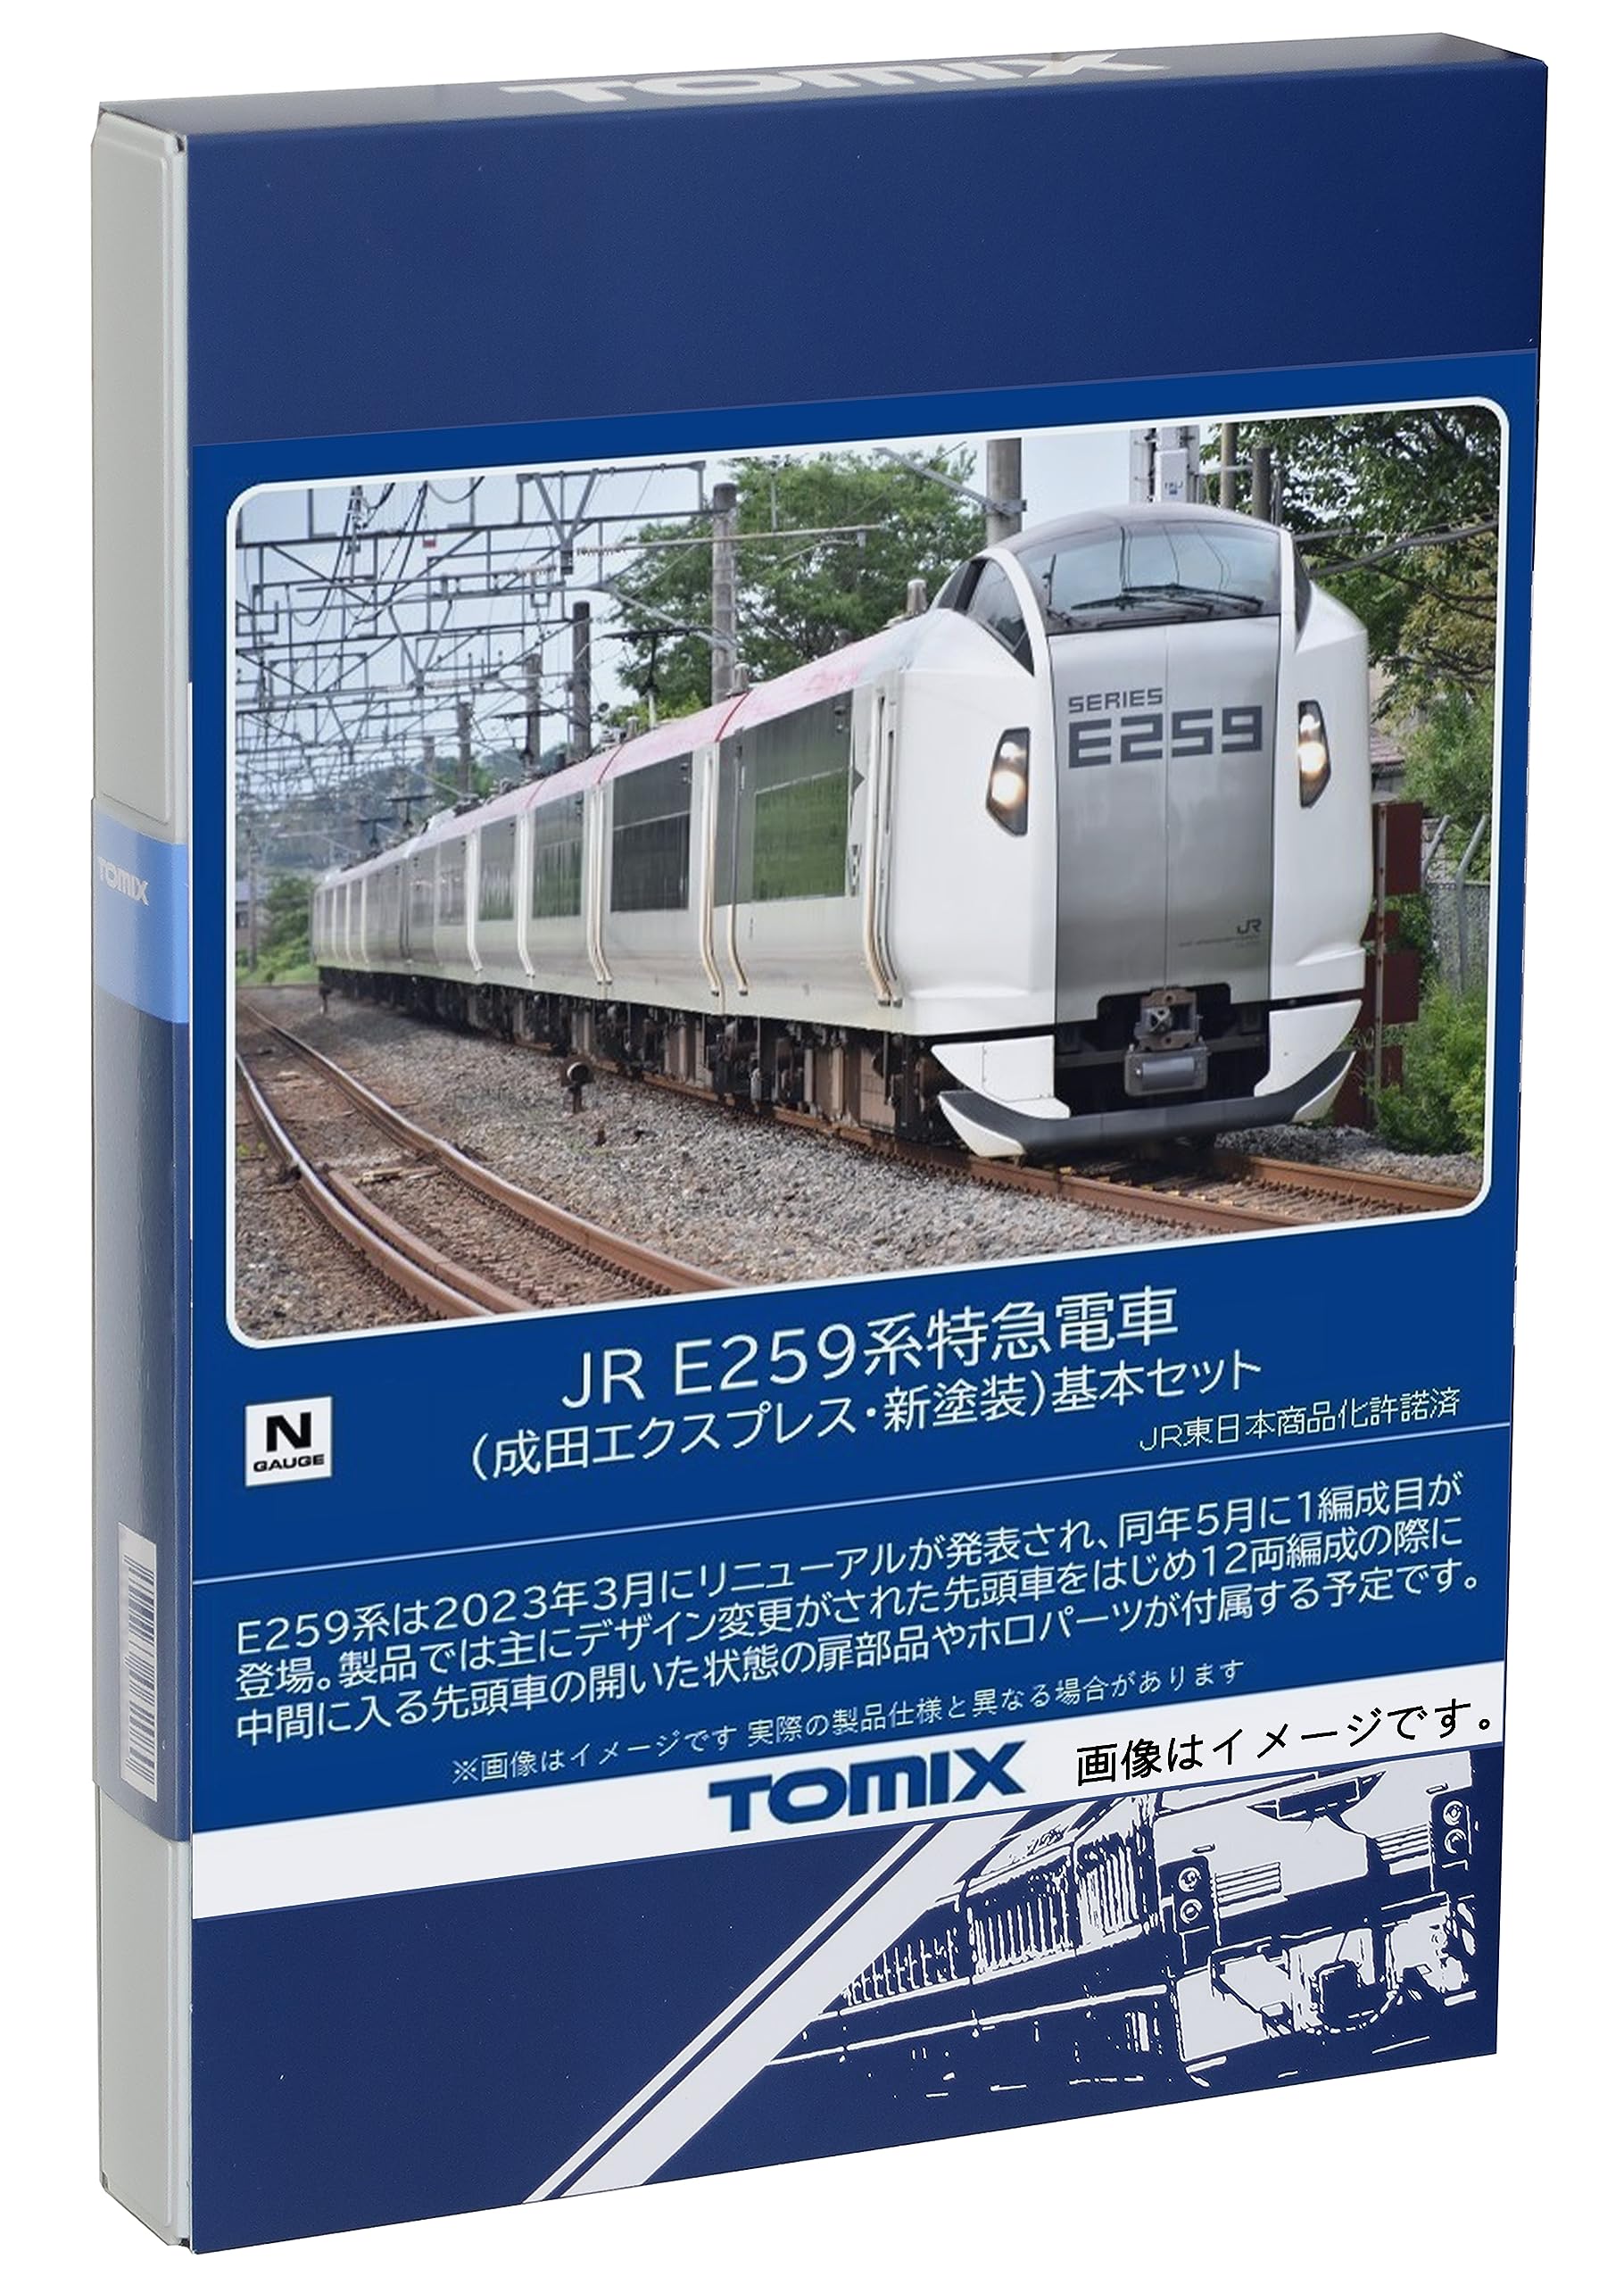 正規販売TOMIX トミックス JR E259系 特急電車 成田エクスプレス 6両セット 特急形電車